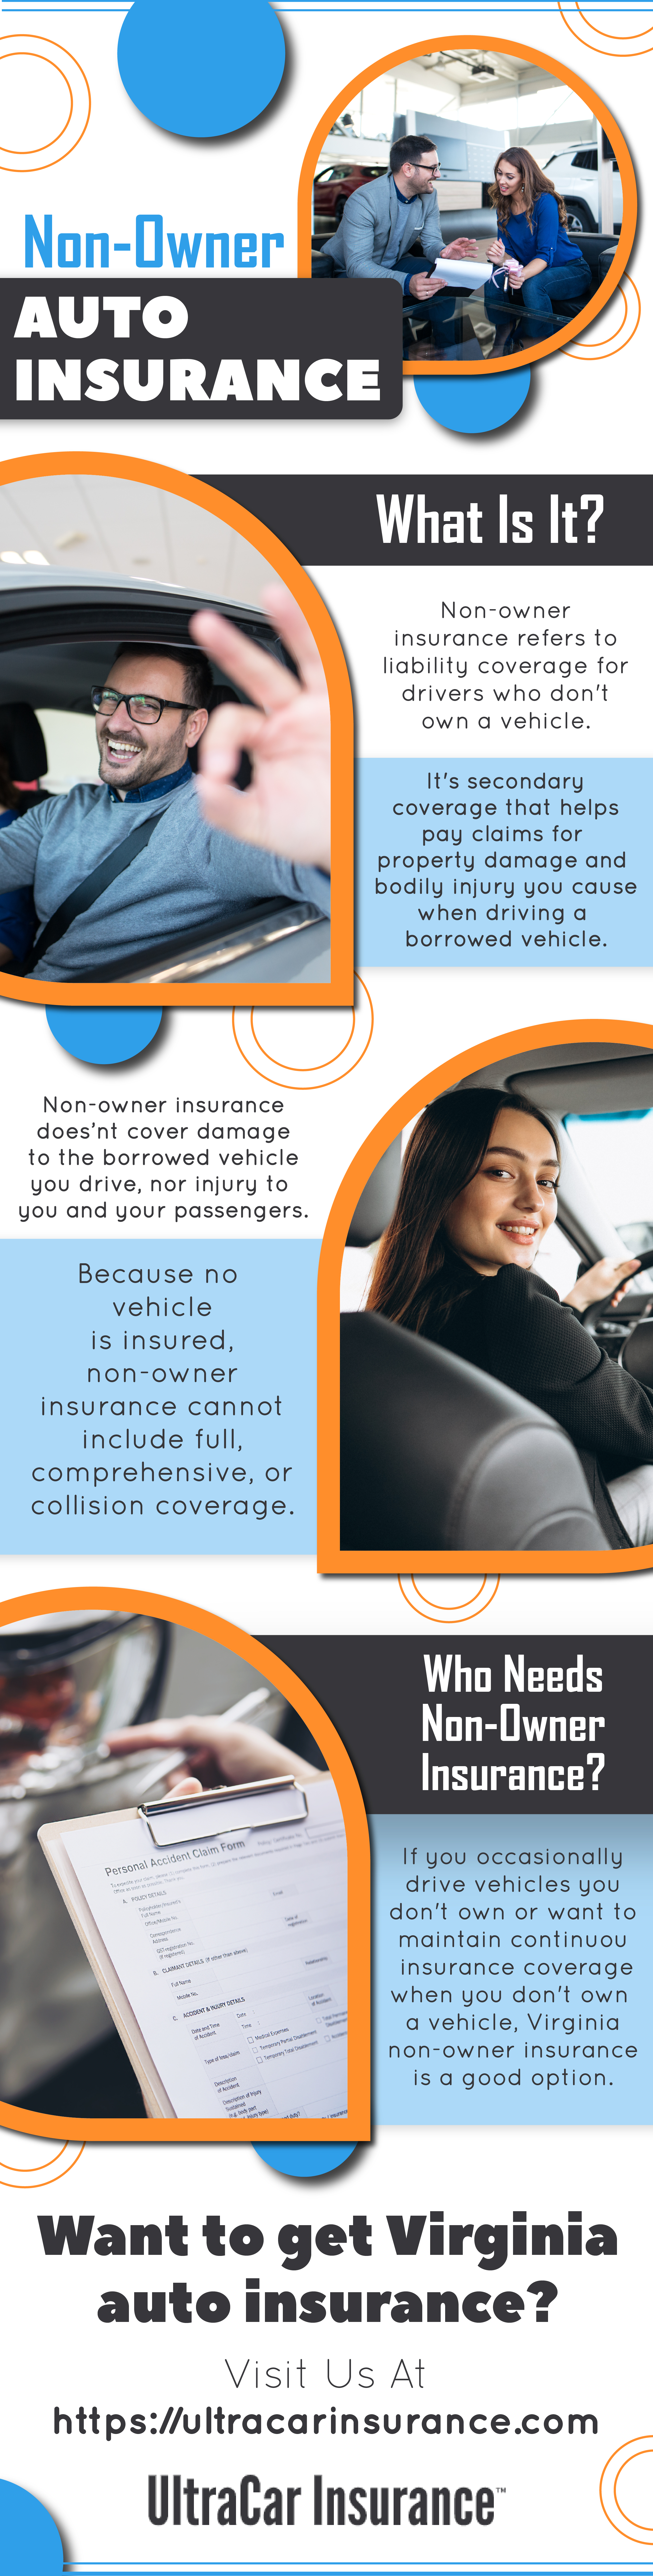 Non-Owner Auto Insurance